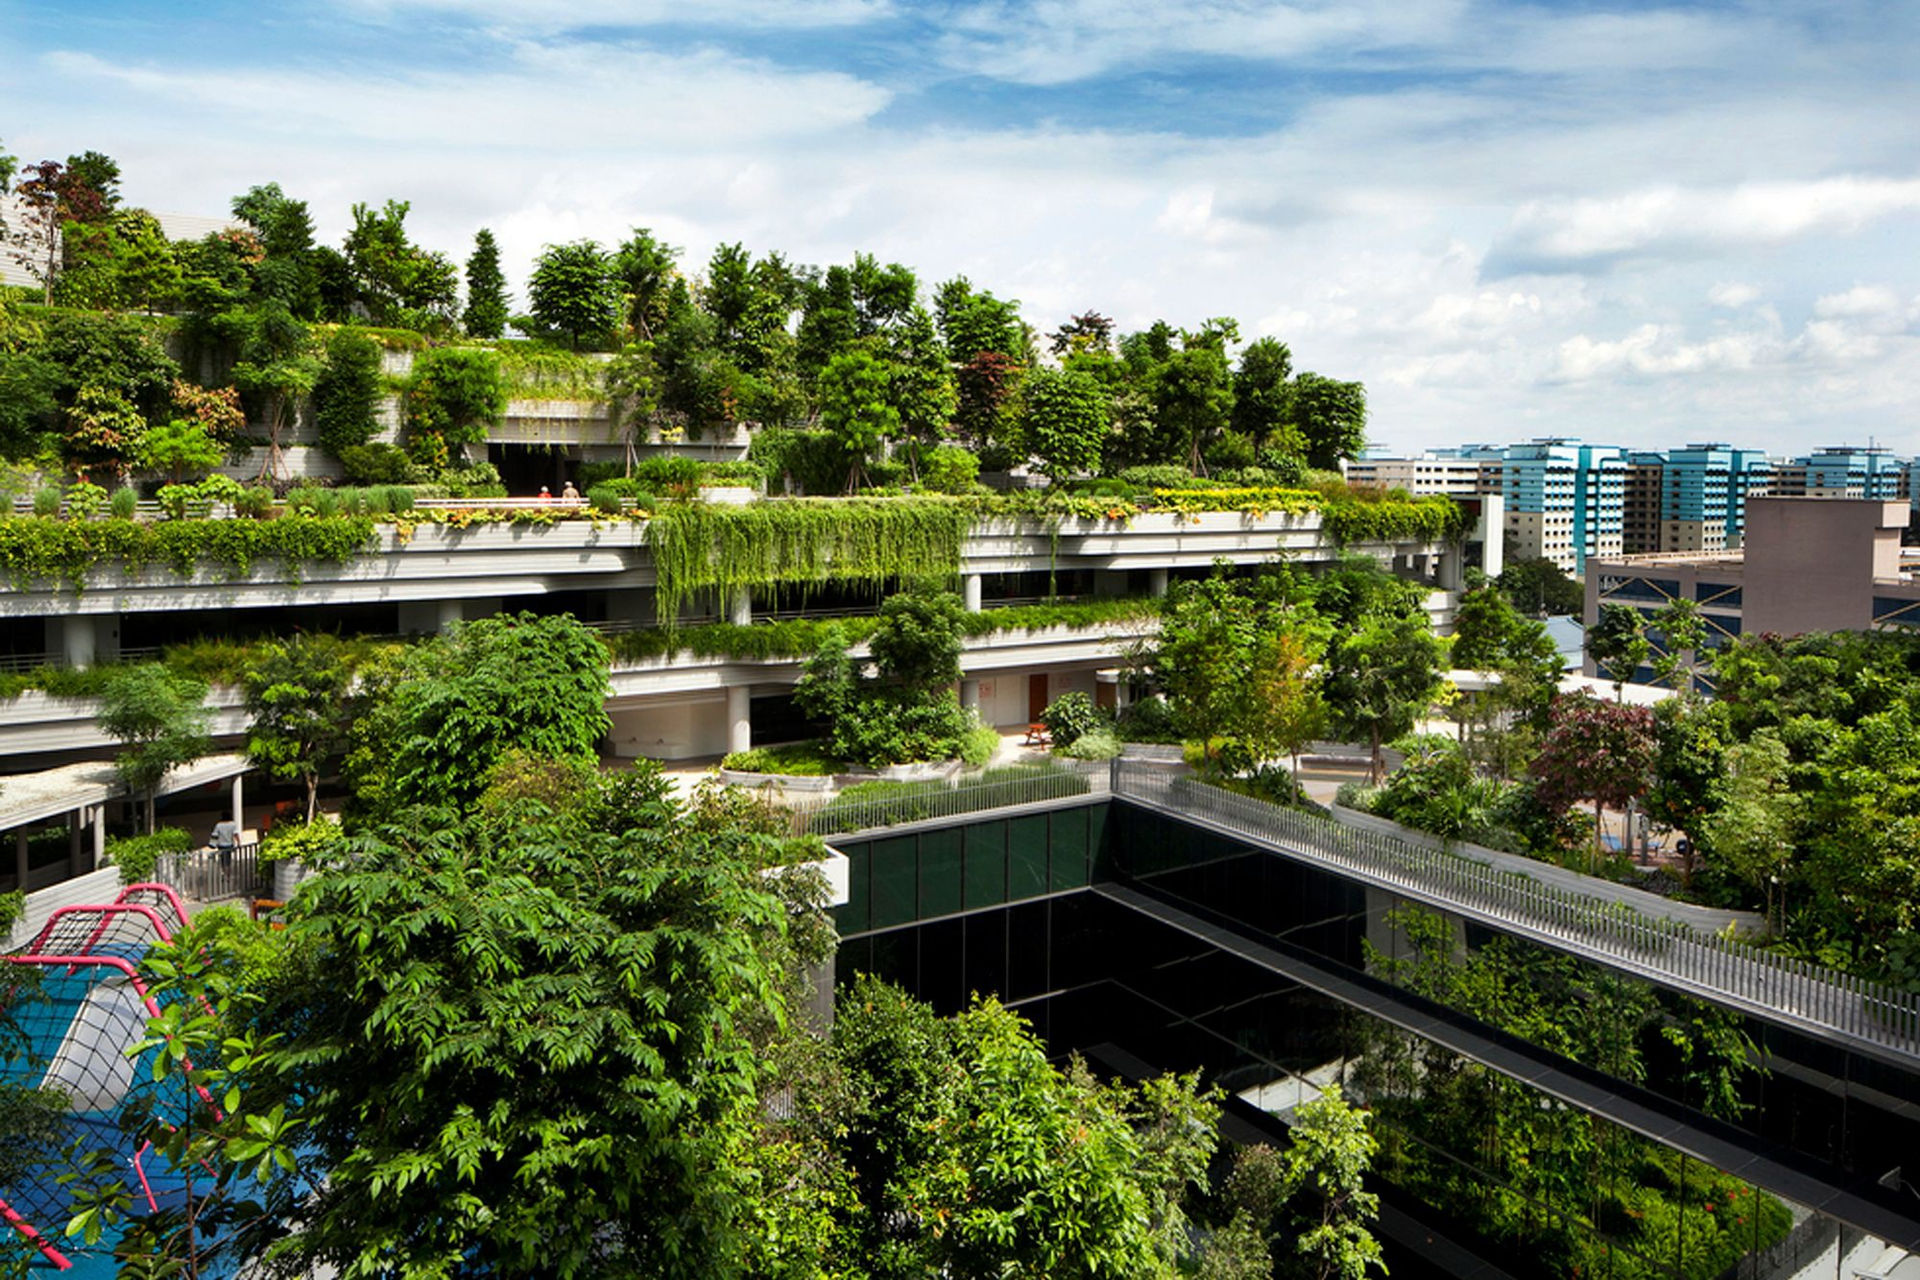 6 tòa nhà xanh ở Singapore được mệnh danh là kỳ quan kiến trúc - 6